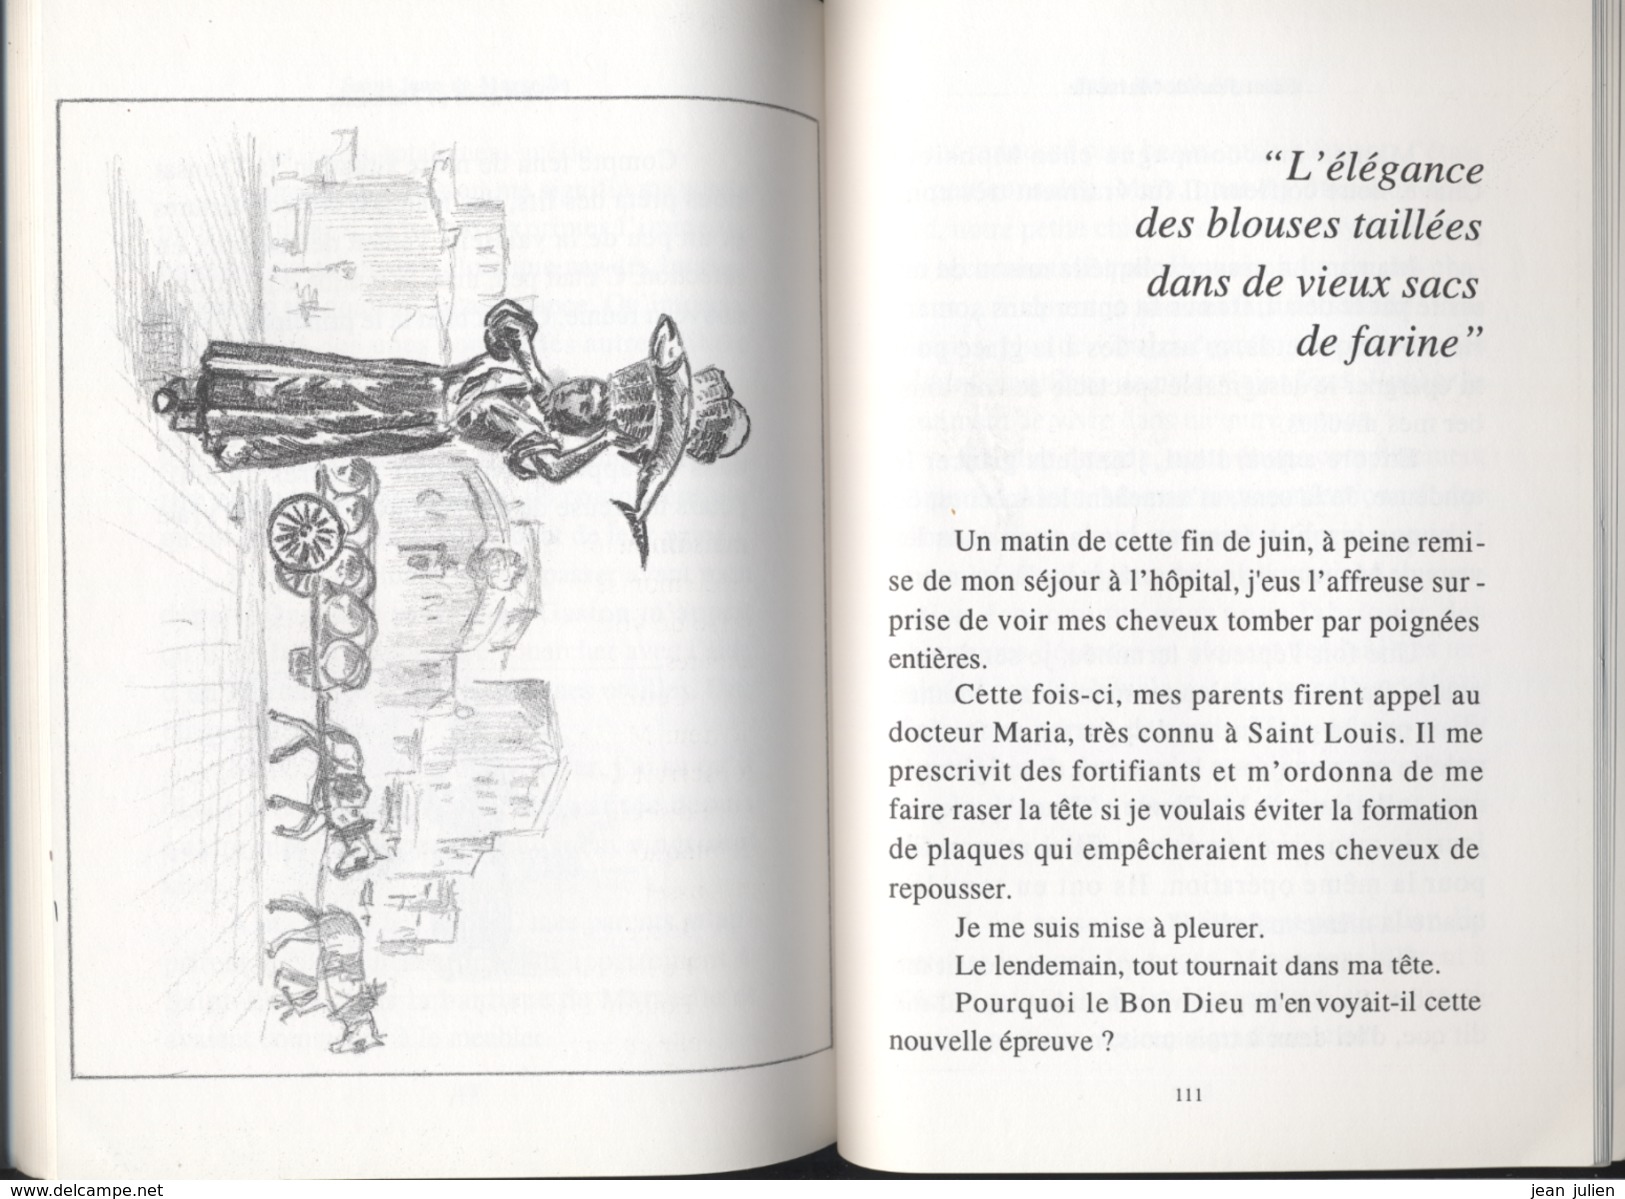 13 - SAINT JEAN DE MARSEILLE -  TEMOIGNAGE - Rose de GENARO - Dédicacé par l'auteur - 1994 - 11 scans